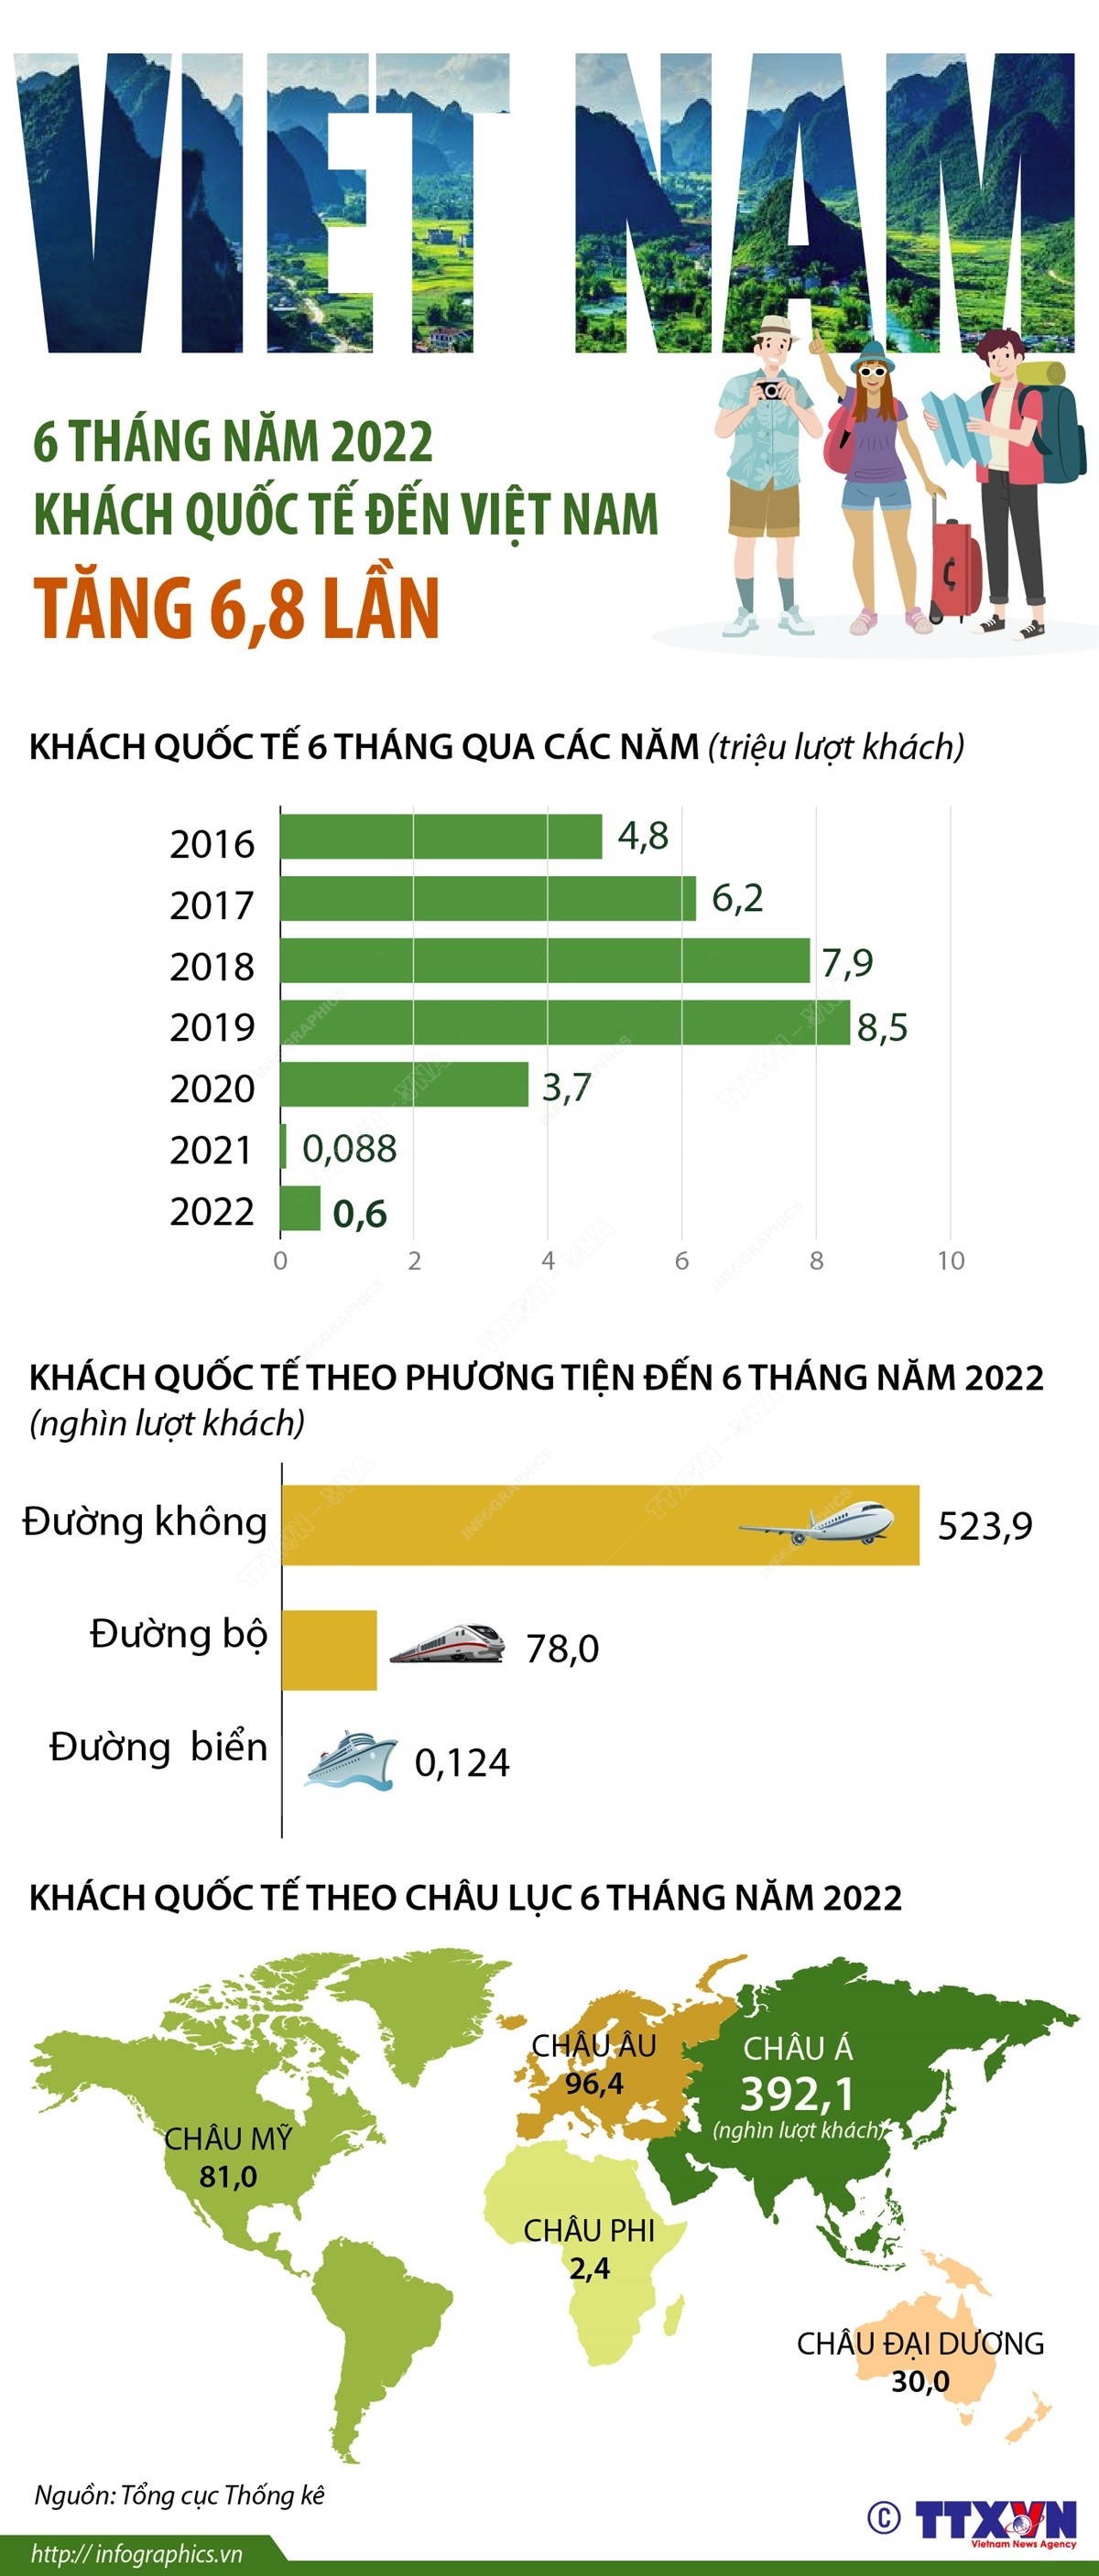 6 tháng năm 2022: Khách quốc tế đến Việt Nam tăng 6,8 lần